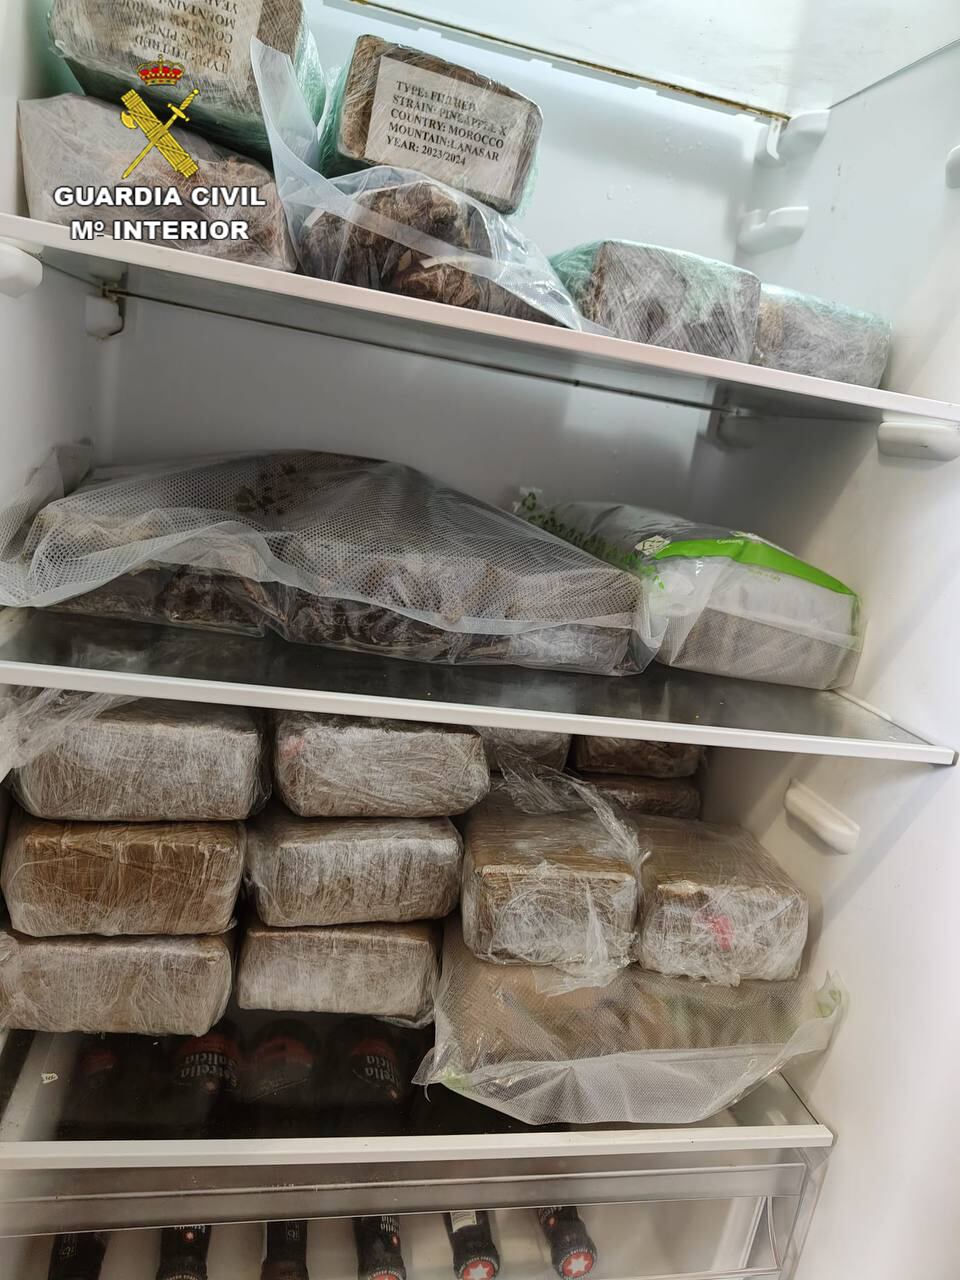 Paquete de hachís encontrados por la Guardia Civil en el frigorífico de la vivienda de uno de los detenidos en la Operación Halia.